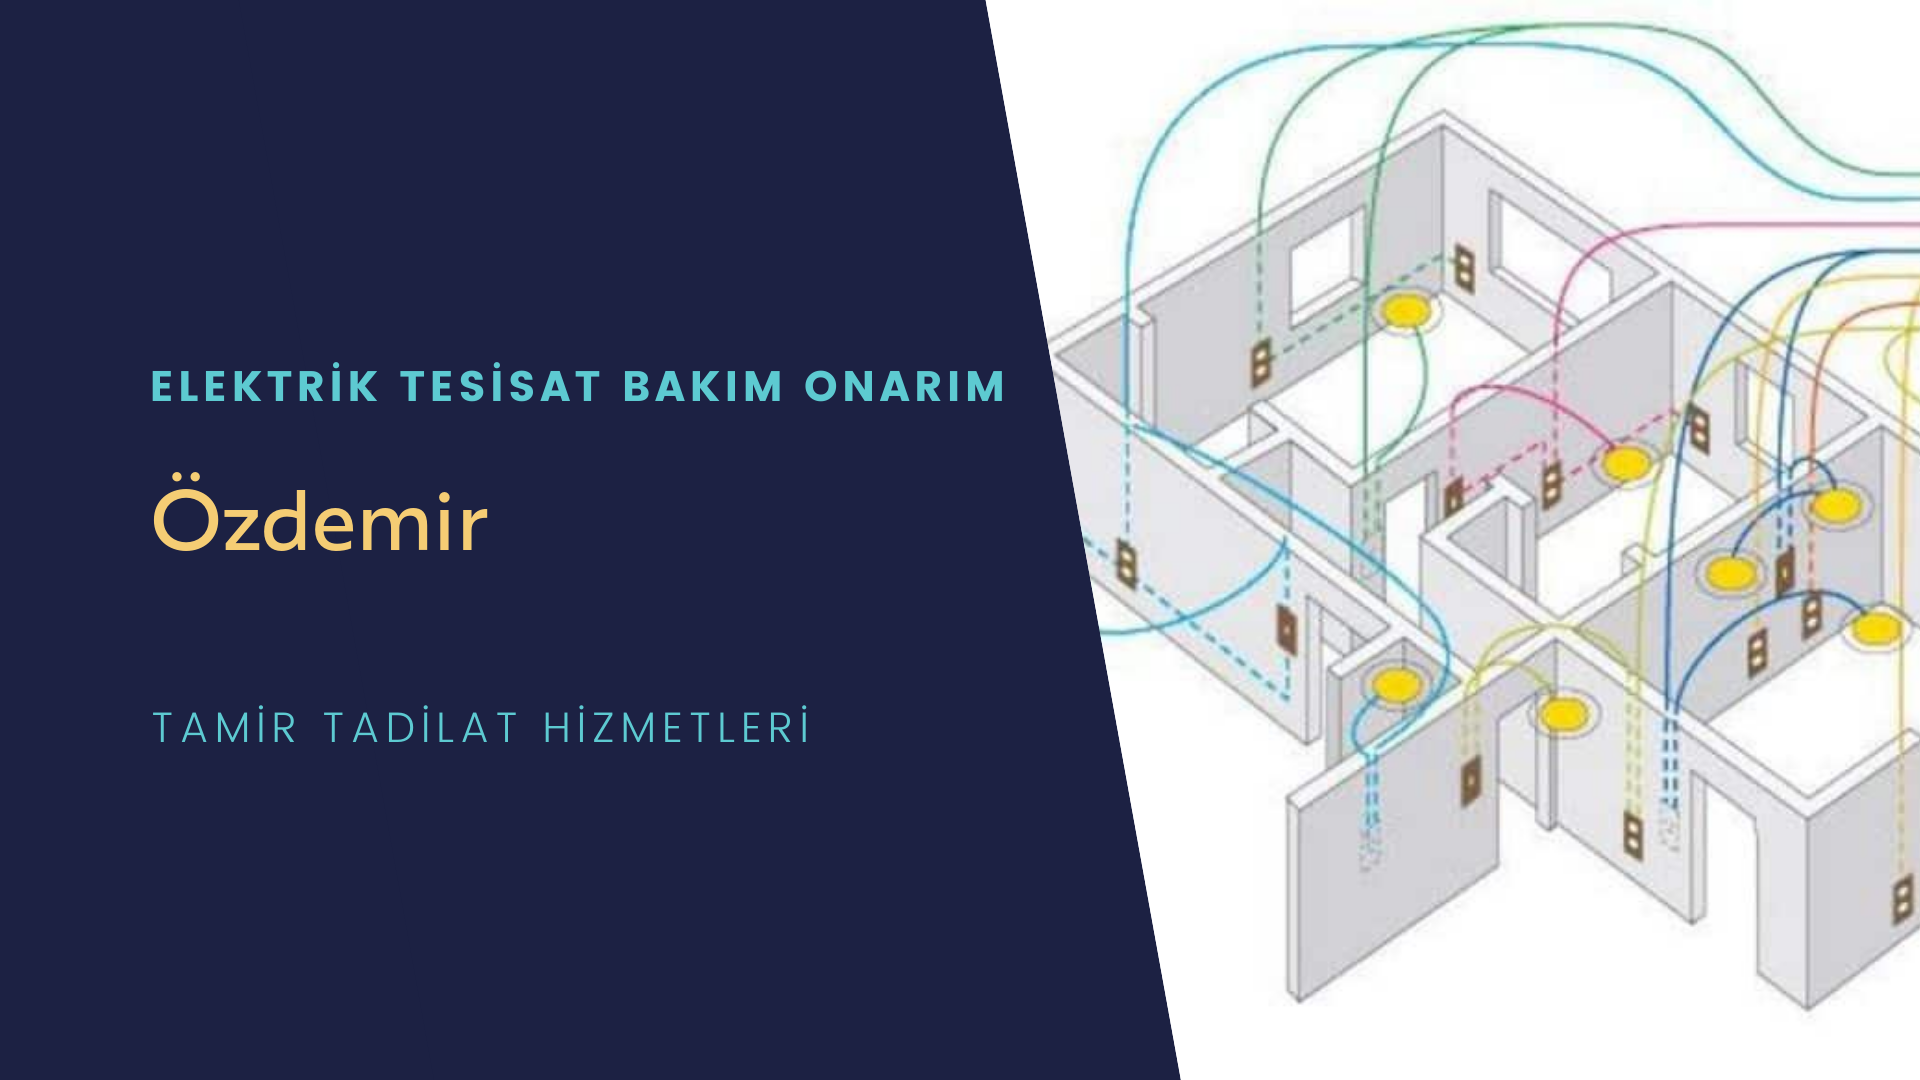 Özdemir'de elektrik tesisatı ustalarımı arıyorsunuz doğru adrestenizi Özdemir elektrik tesisatı ustalarımız 7/24 sizlere hizmet vermekten mutluluk duyar.